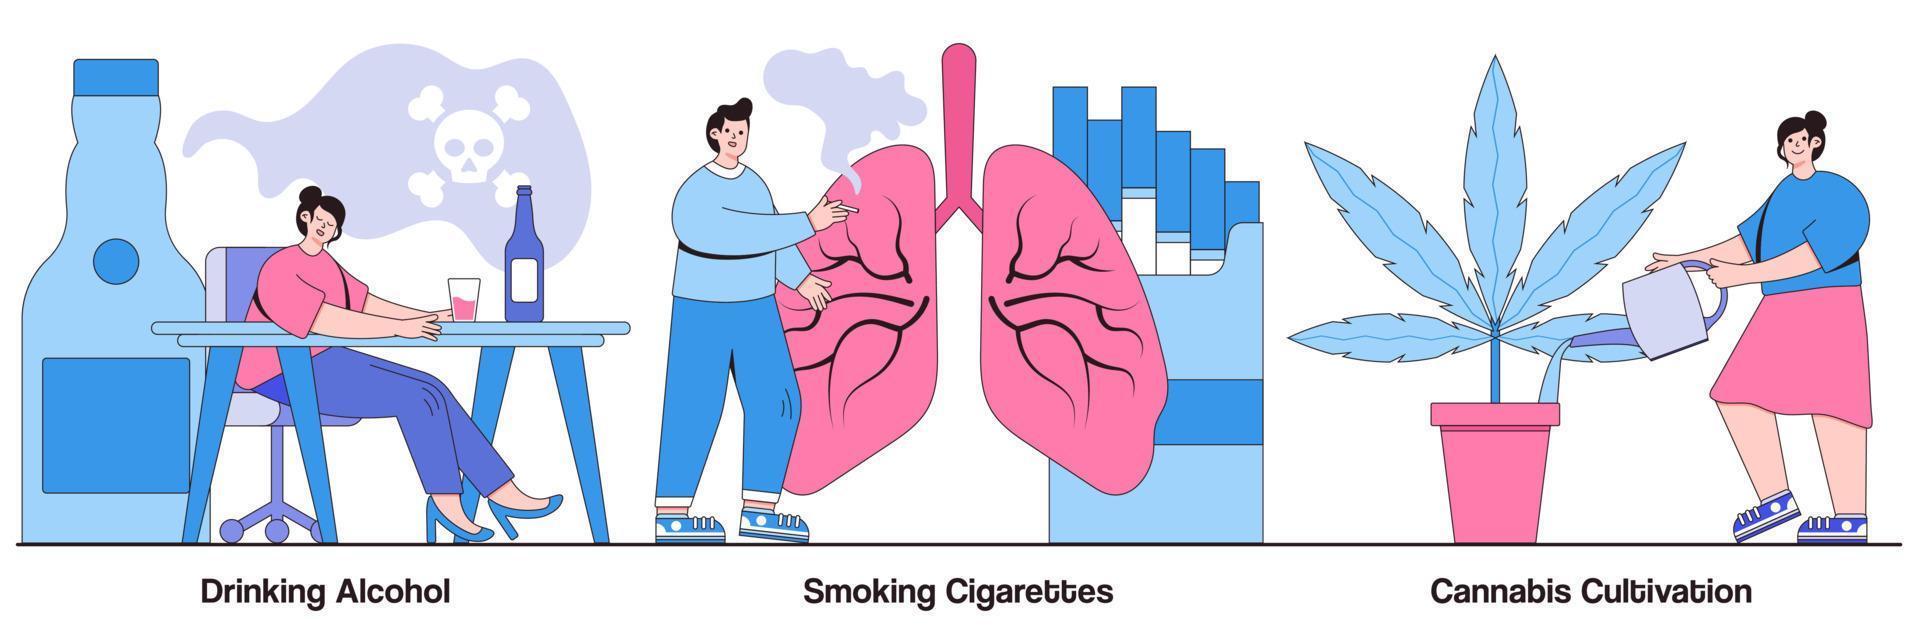 alcohol drinken, sigaretten roken en geïllustreerde verpakking voor cannabisteelt vector